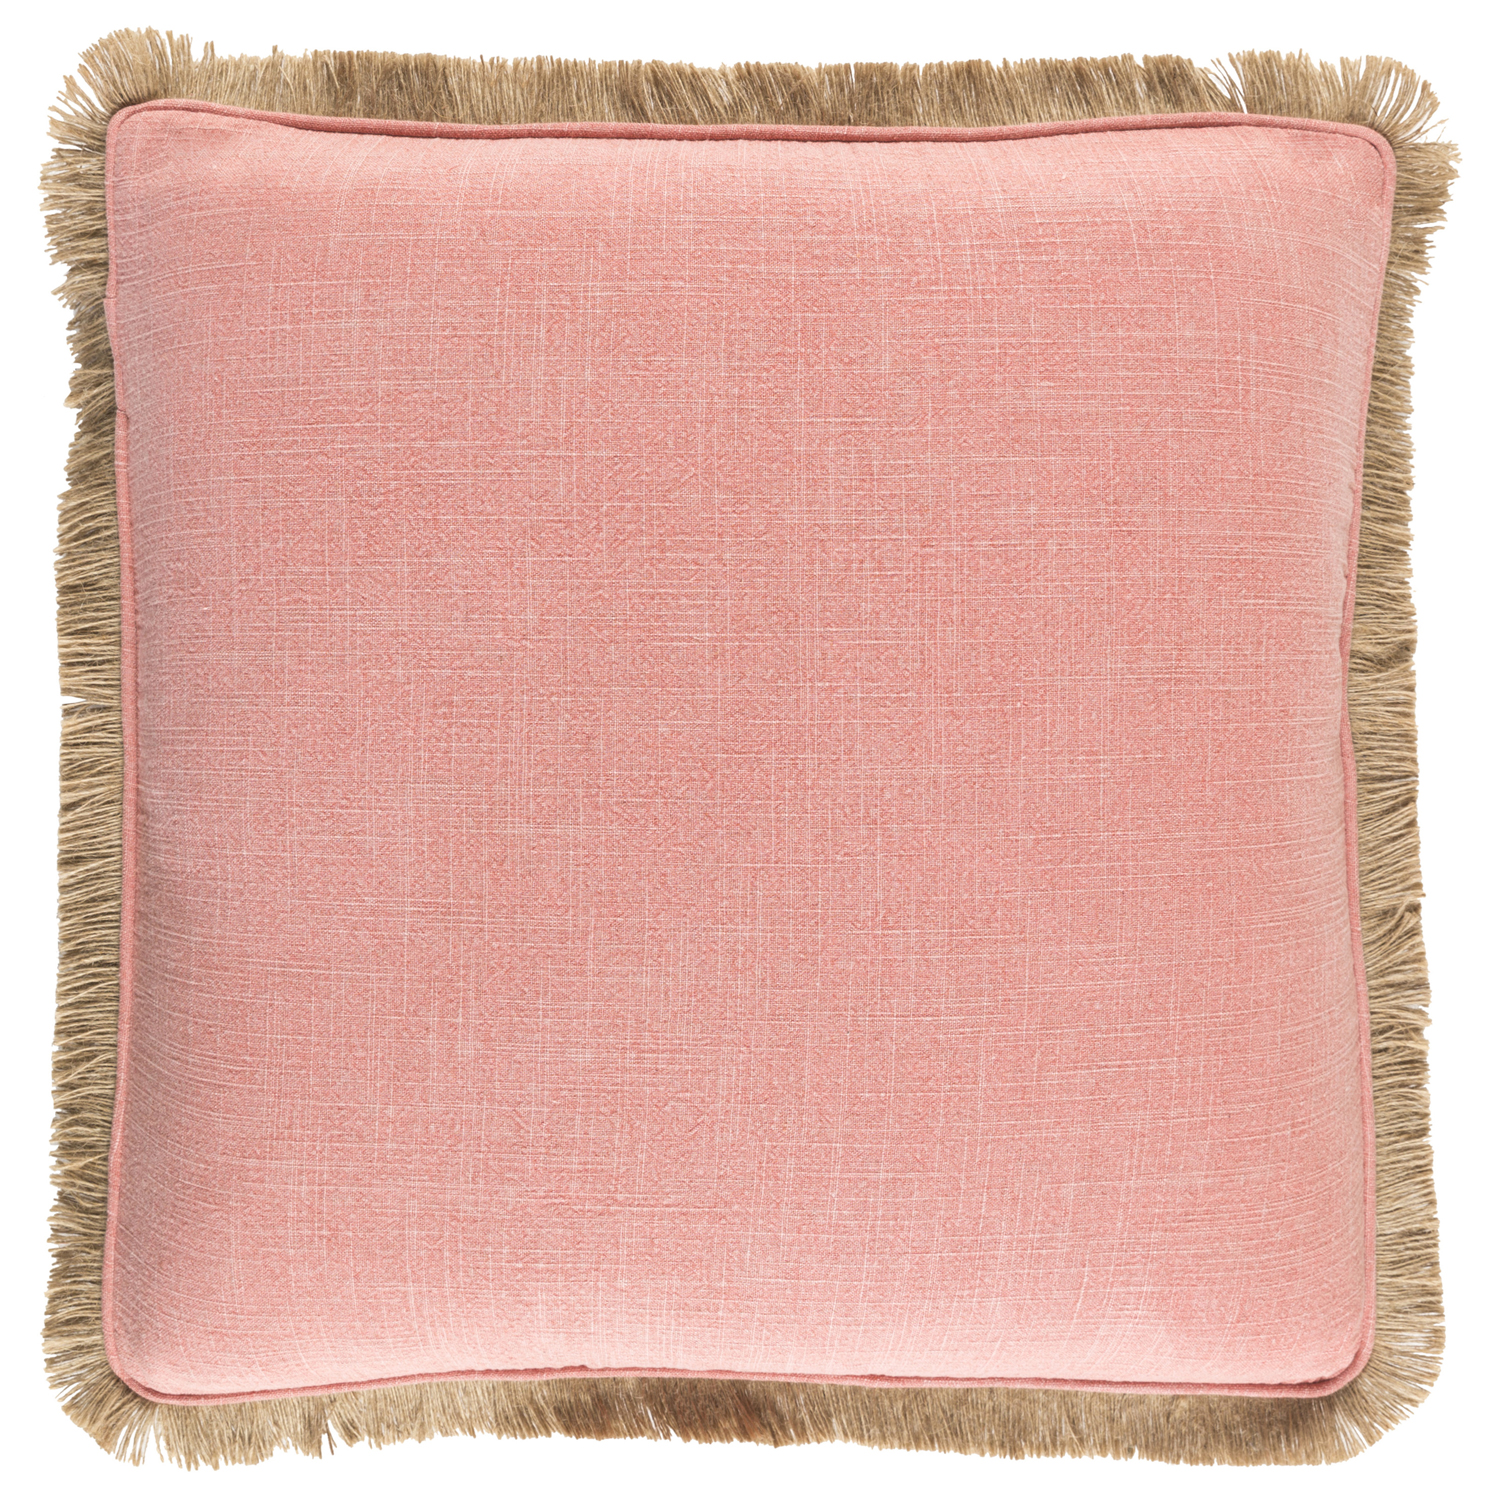 Pillows + Throws + Rugs, Coral Linen Pillow